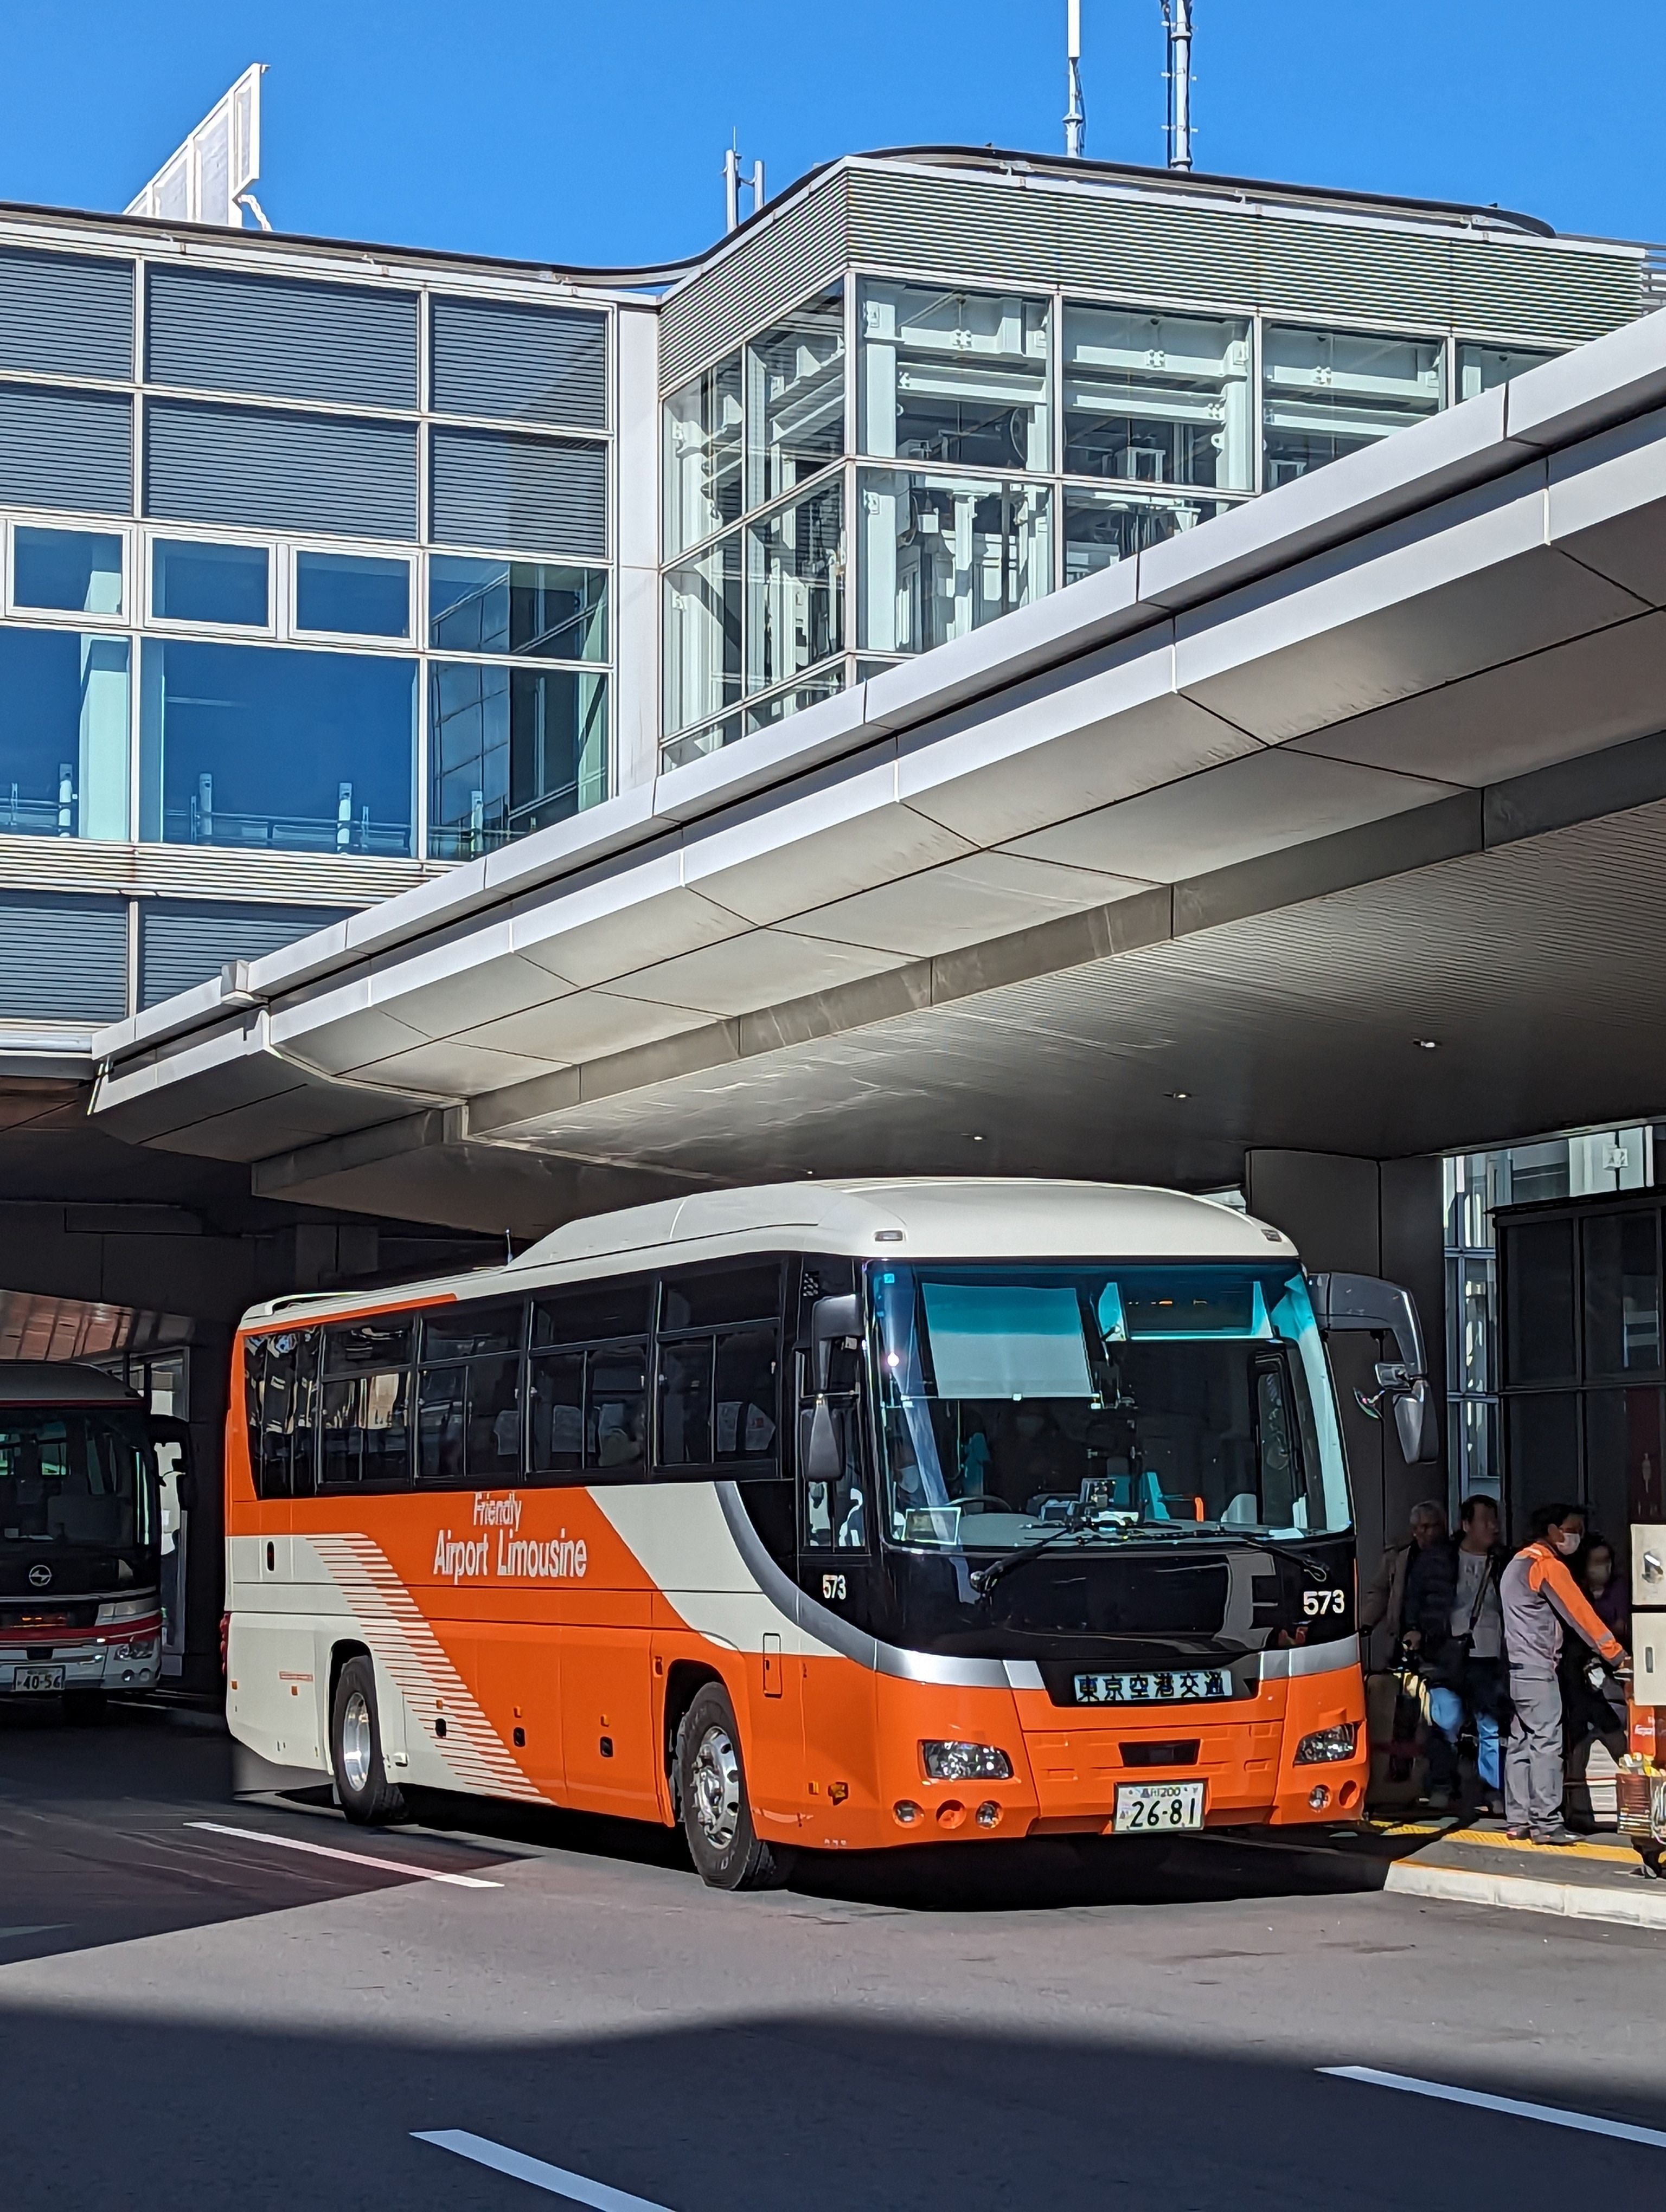 Airport Limousine Bus - Arrival at Narita Airport